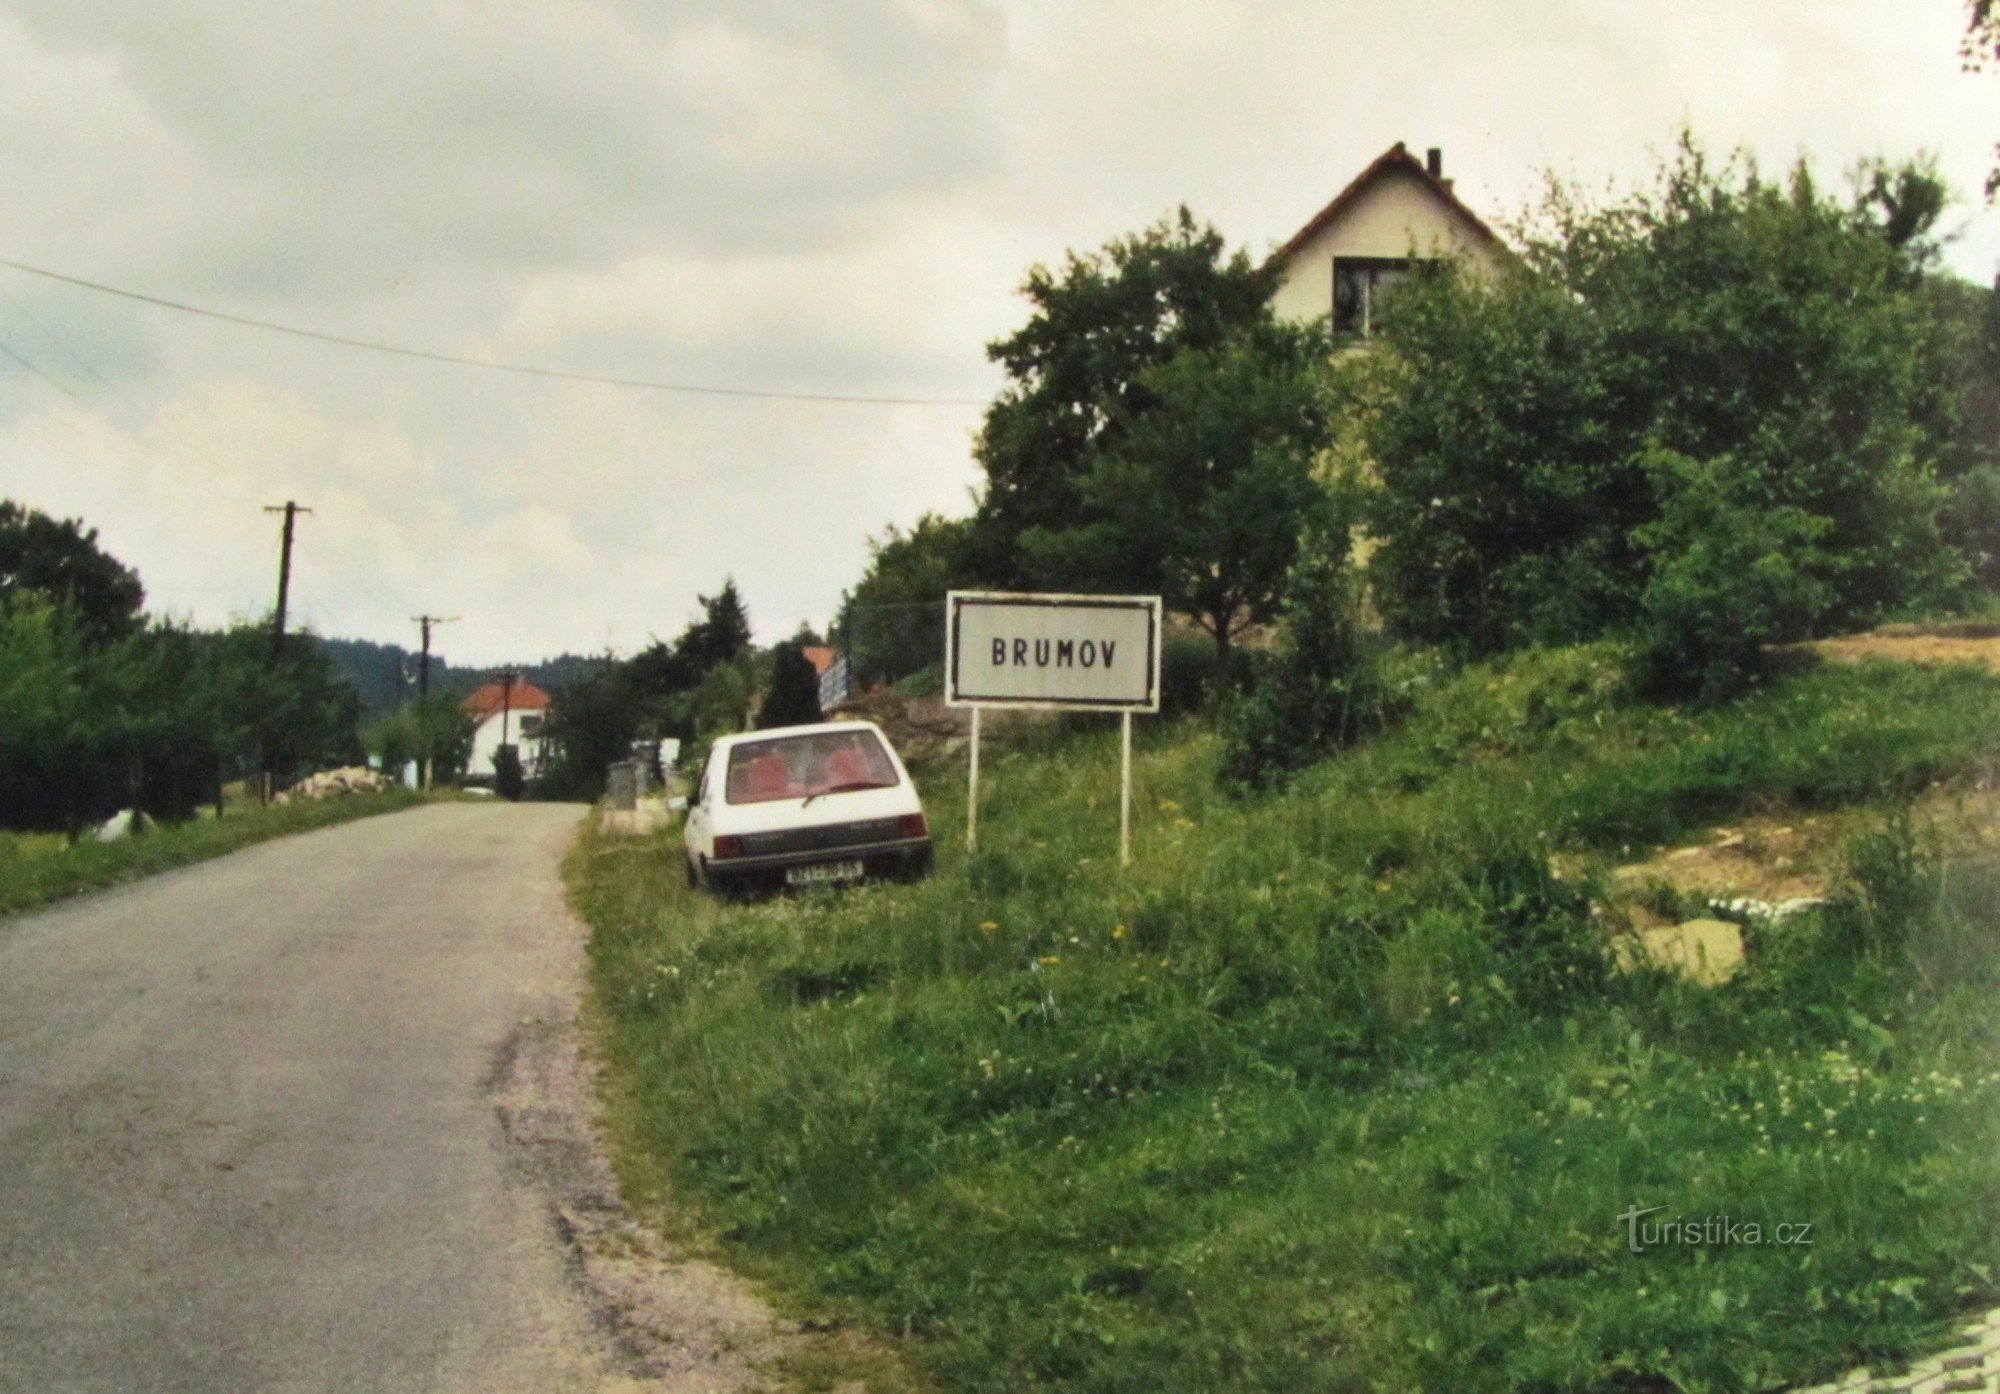 Călătorie în Highlands - 3. De la Lysice la Brumov, Osik, Synalova și la Sýkoř - retro 2001